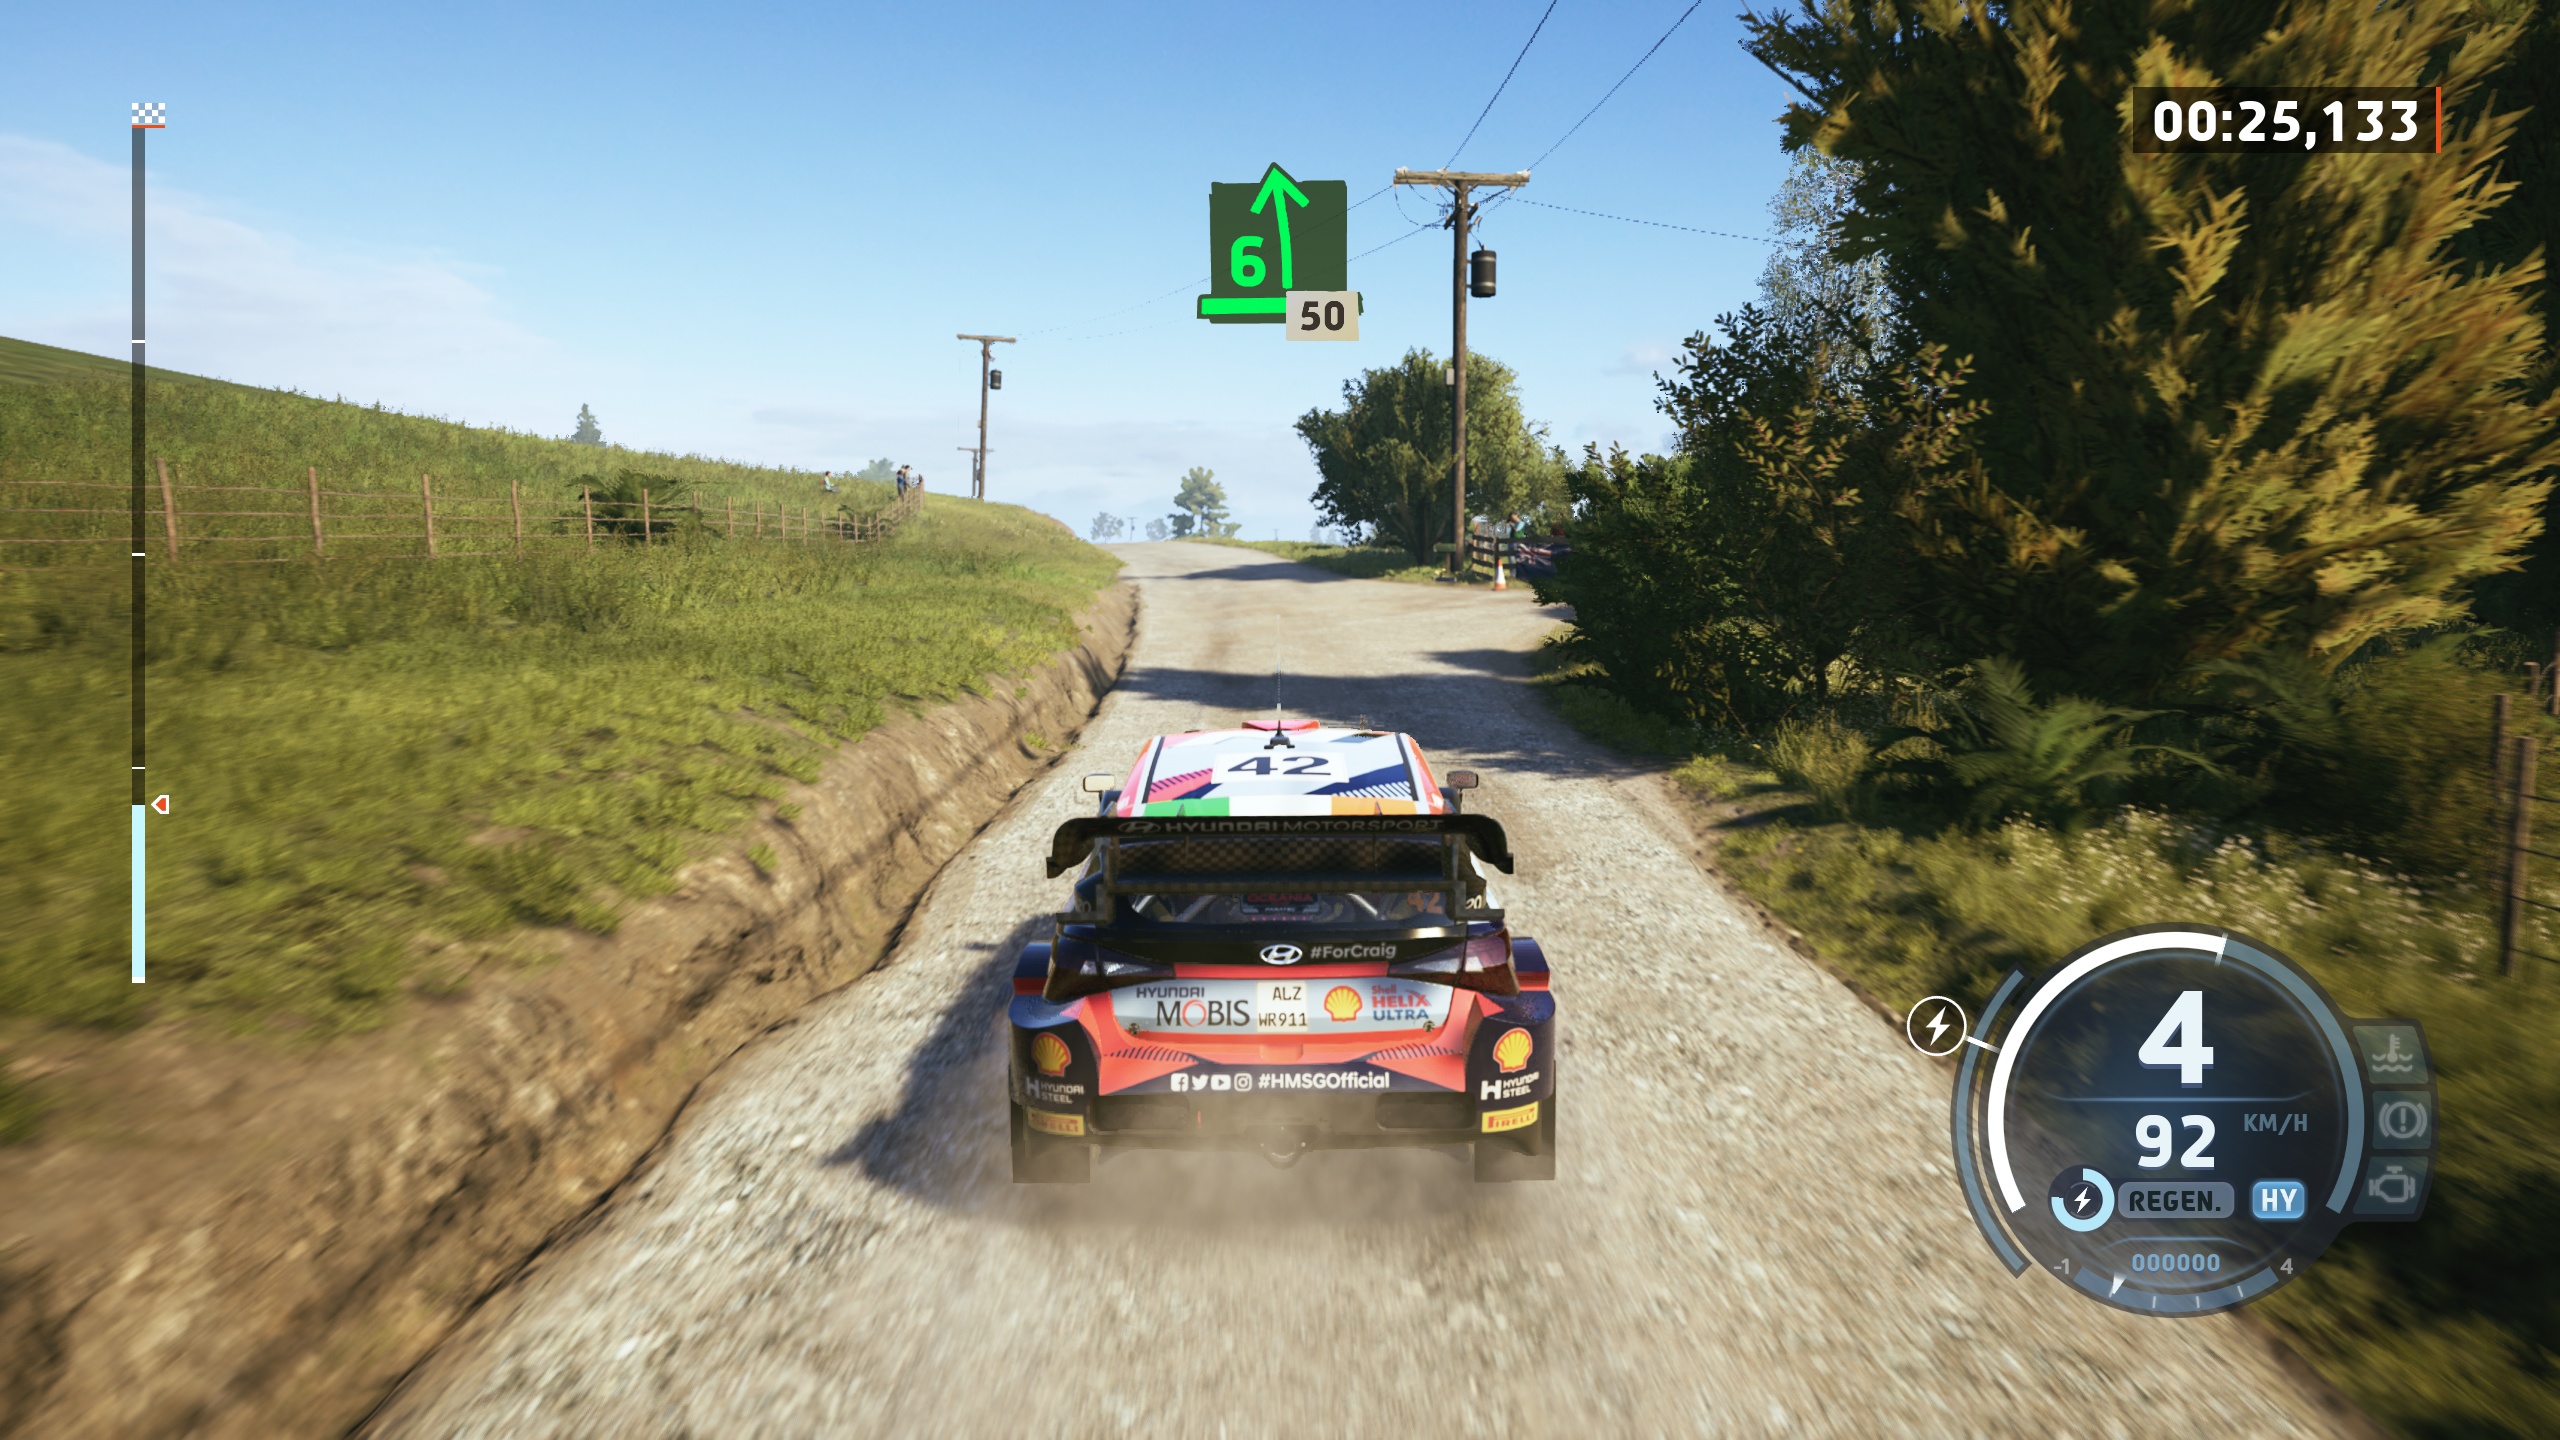  (I přes změnu enginu je grafický skok oproti Dirt Rally 2.0 spíše omezený.)